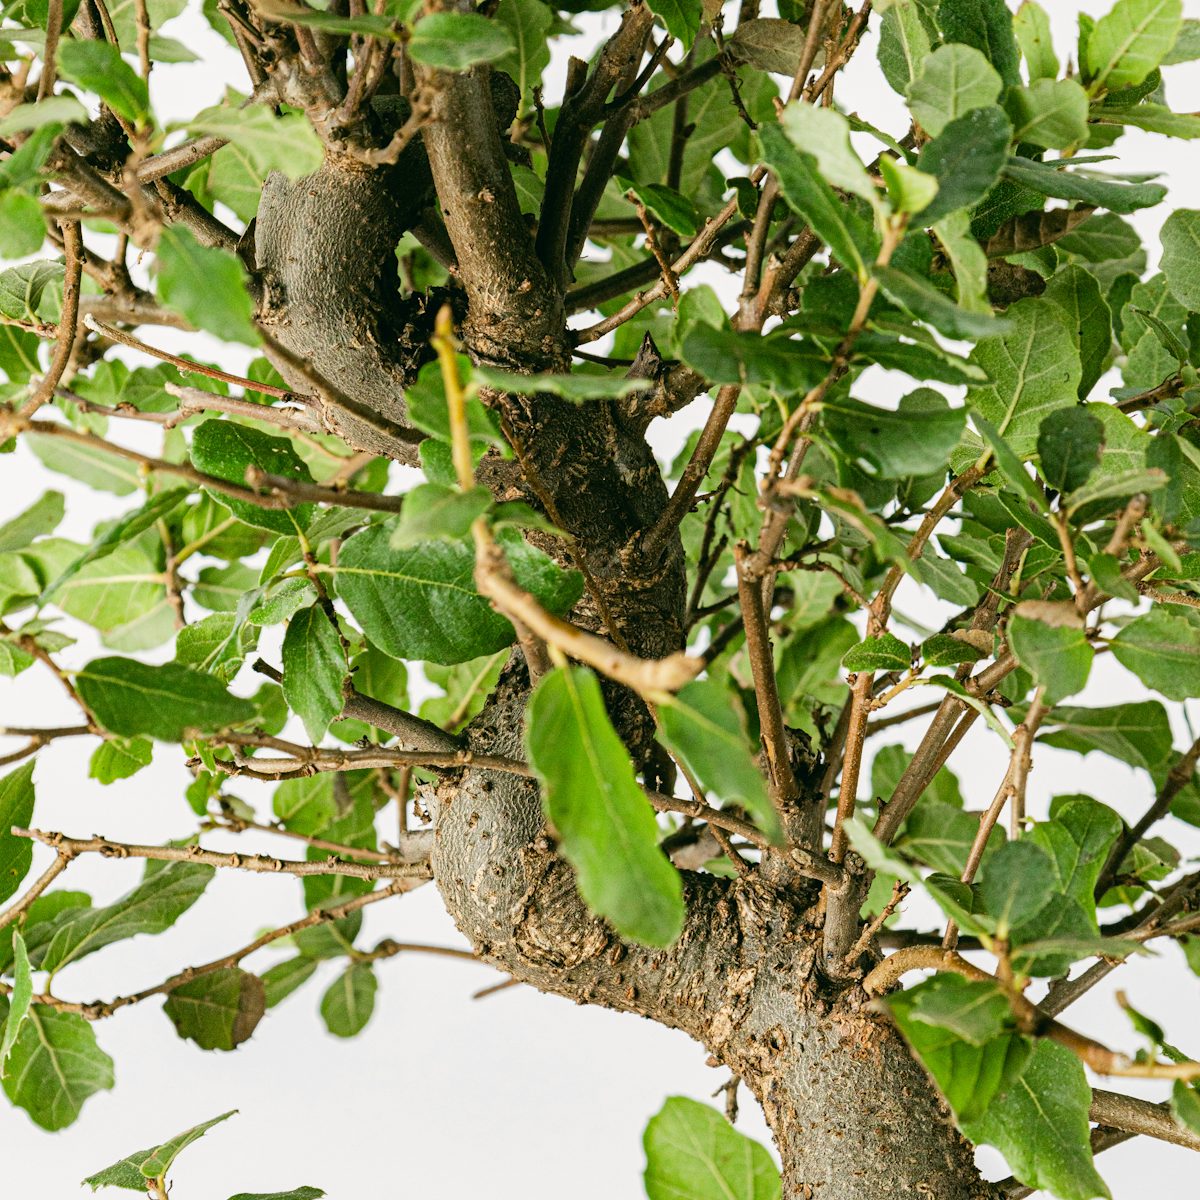 Bonsai 10 lat Quercus Suber